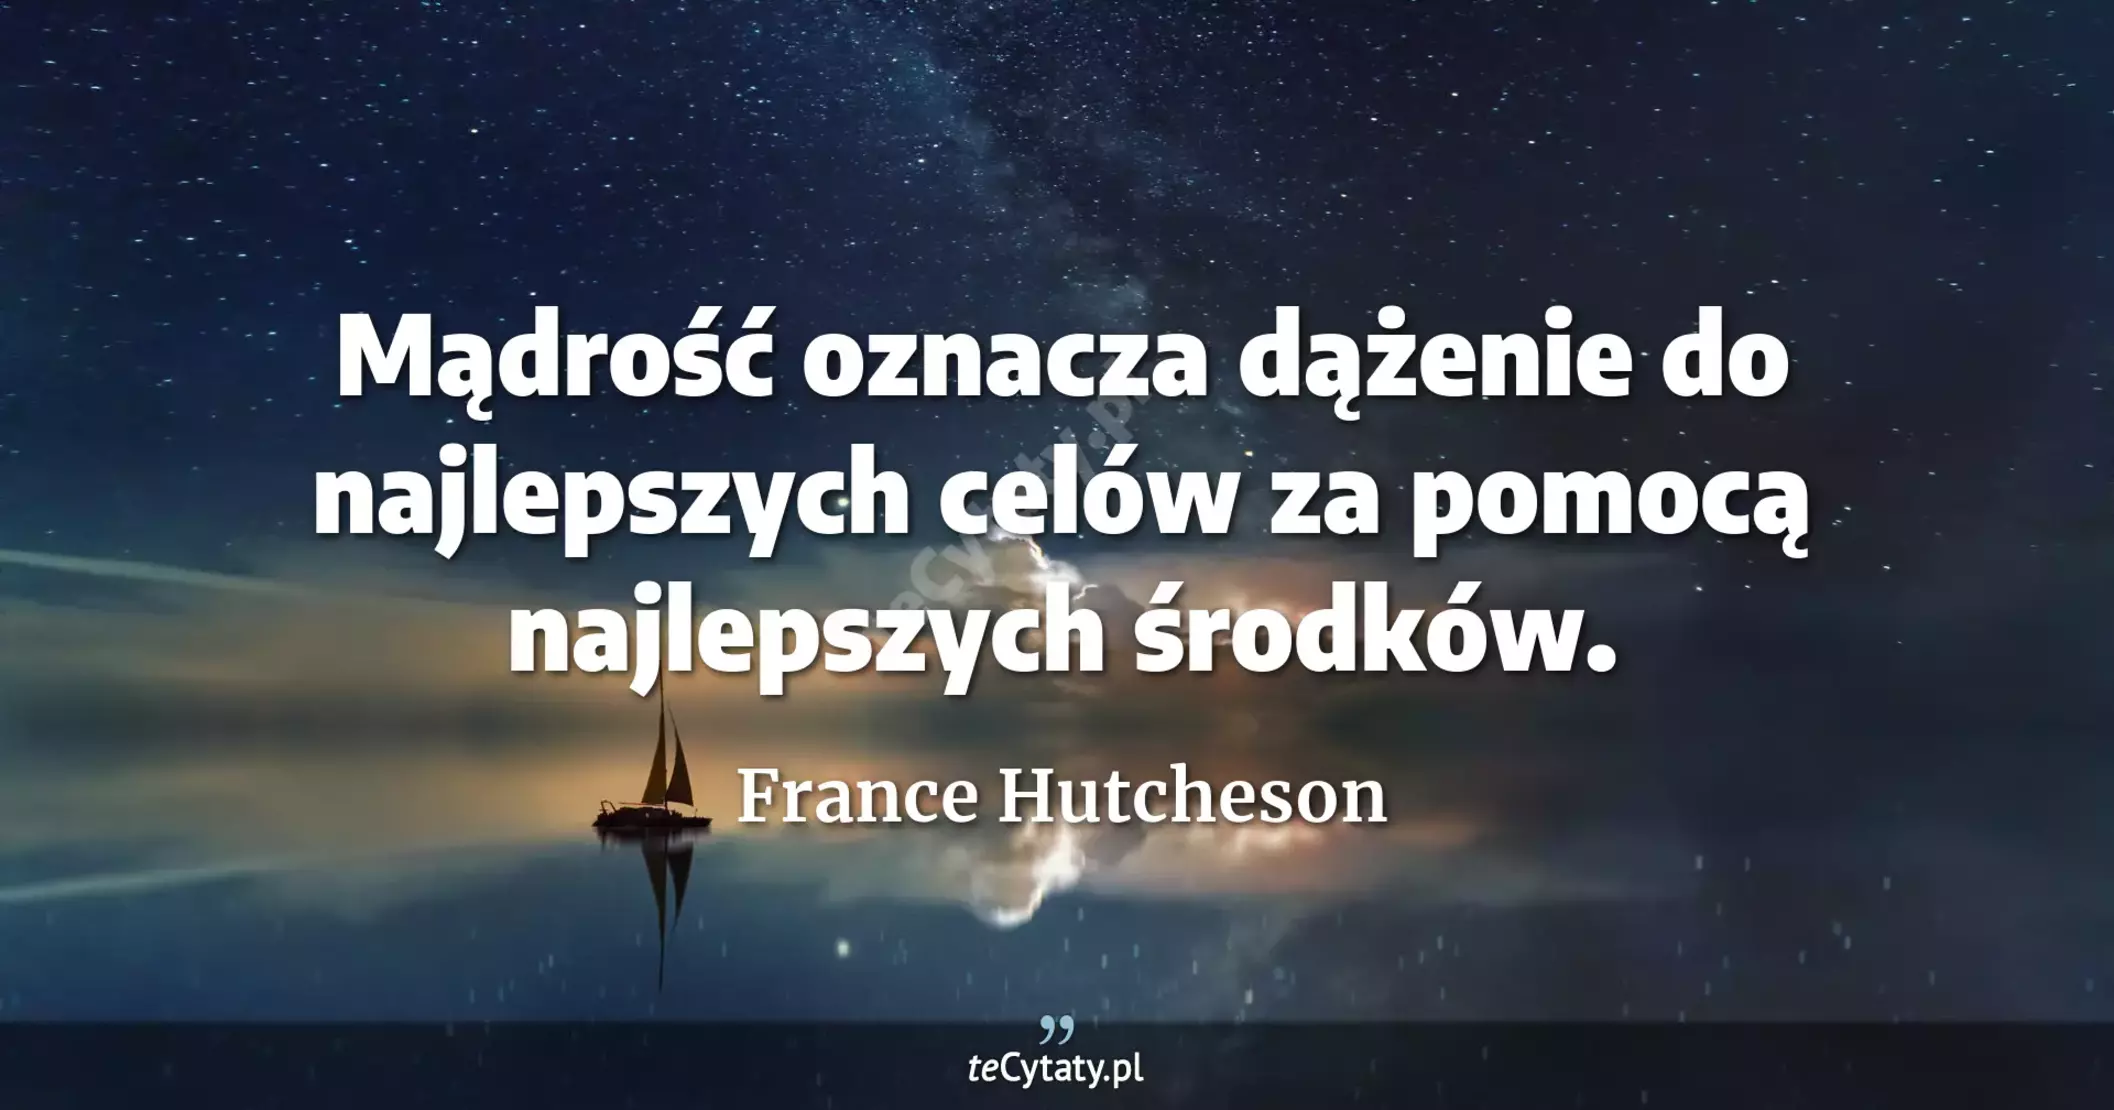 Mądrość oznacza dążenie do najlepszych celów za pomocą najlepszych środków. - France Hutcheson